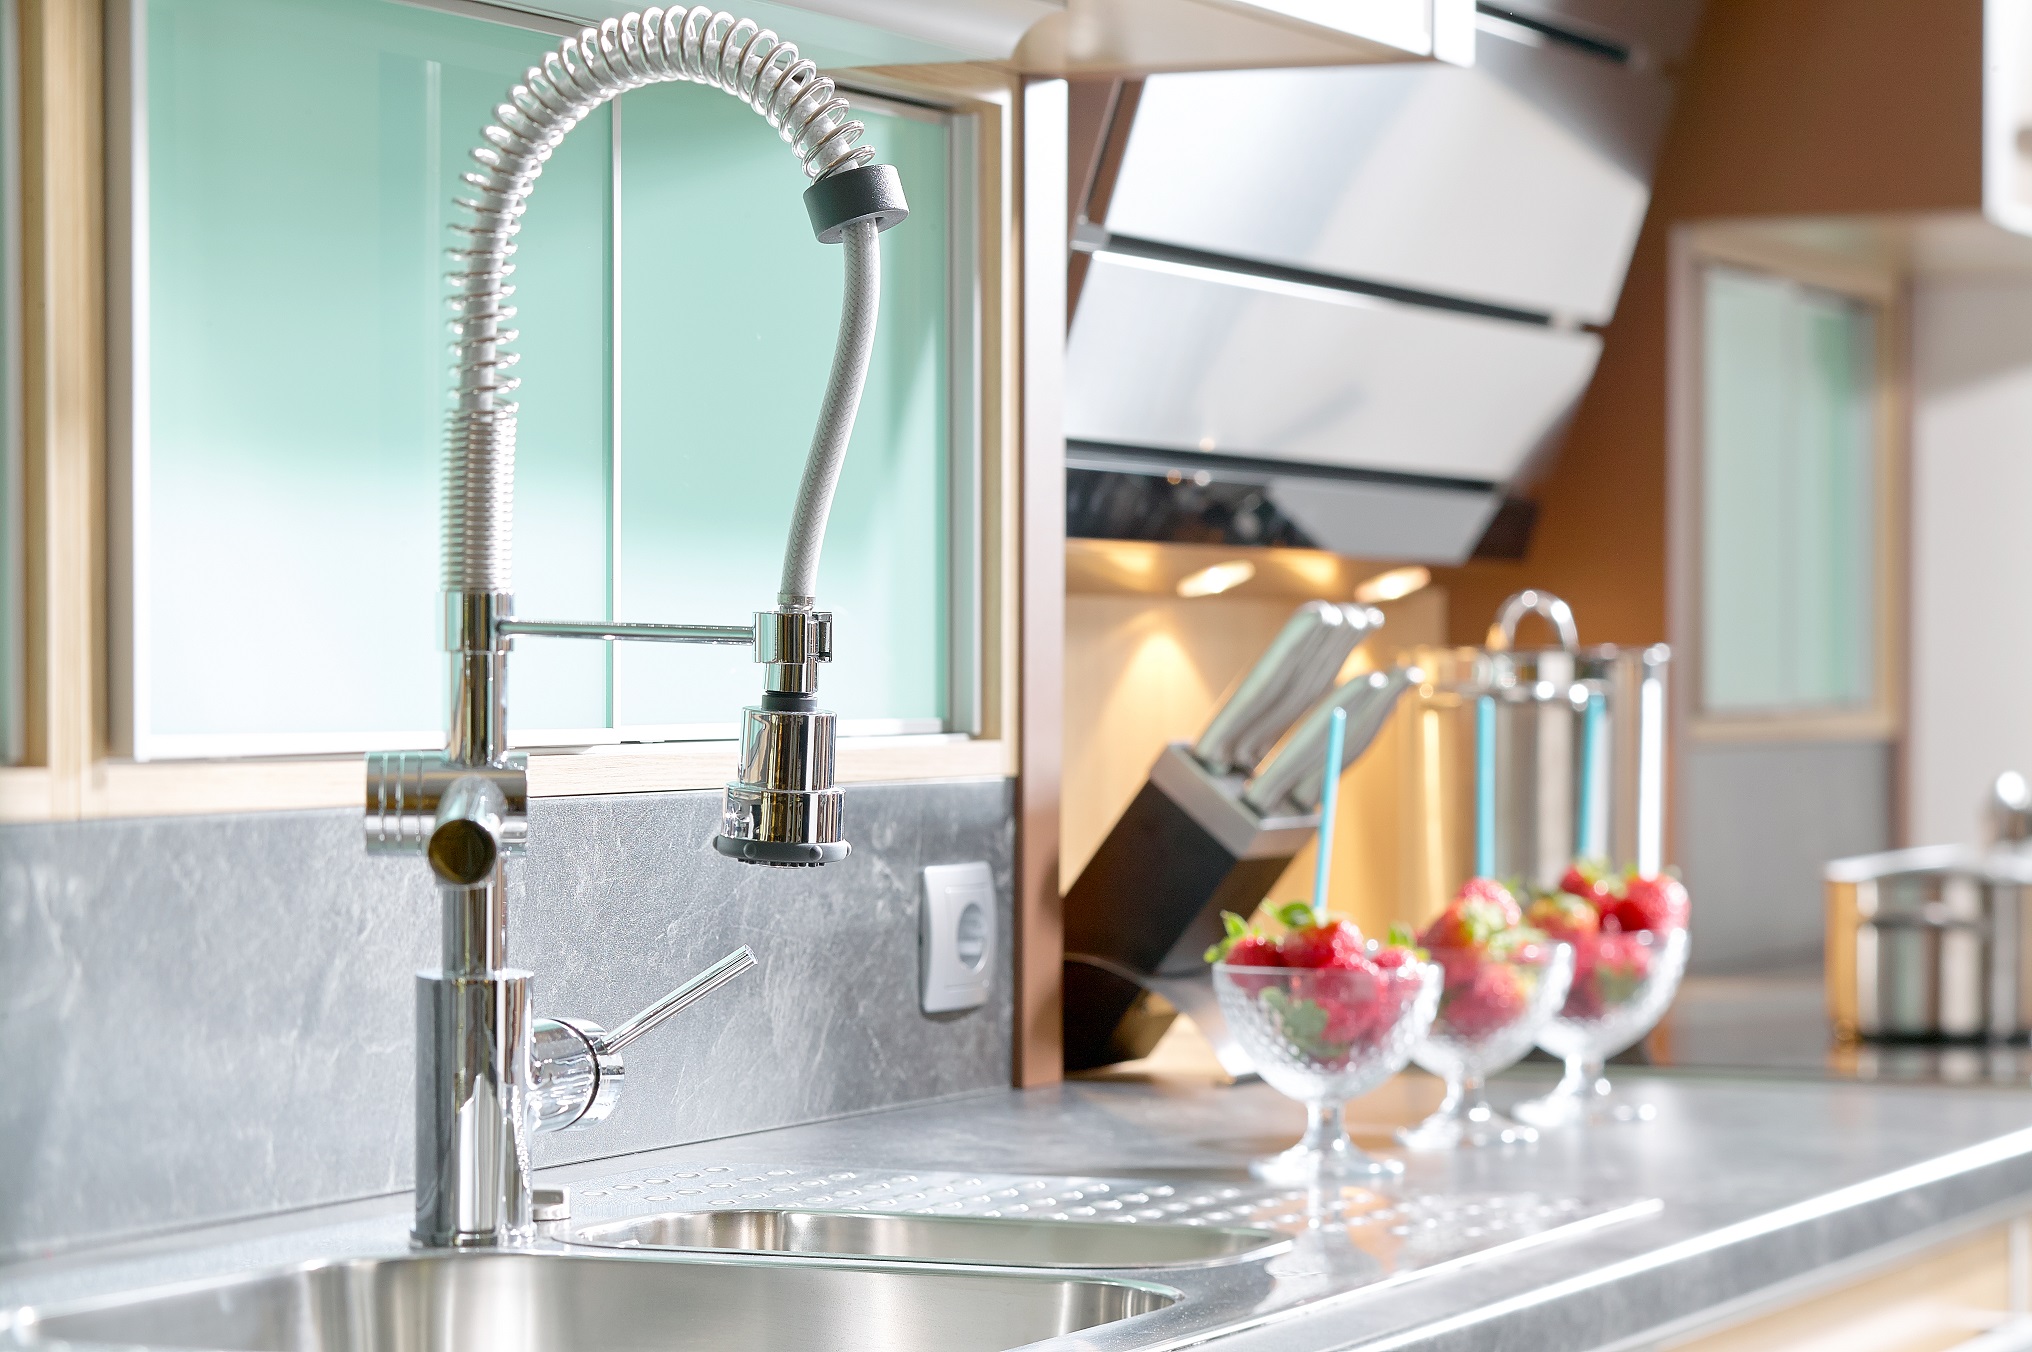 modern kitchen faucet